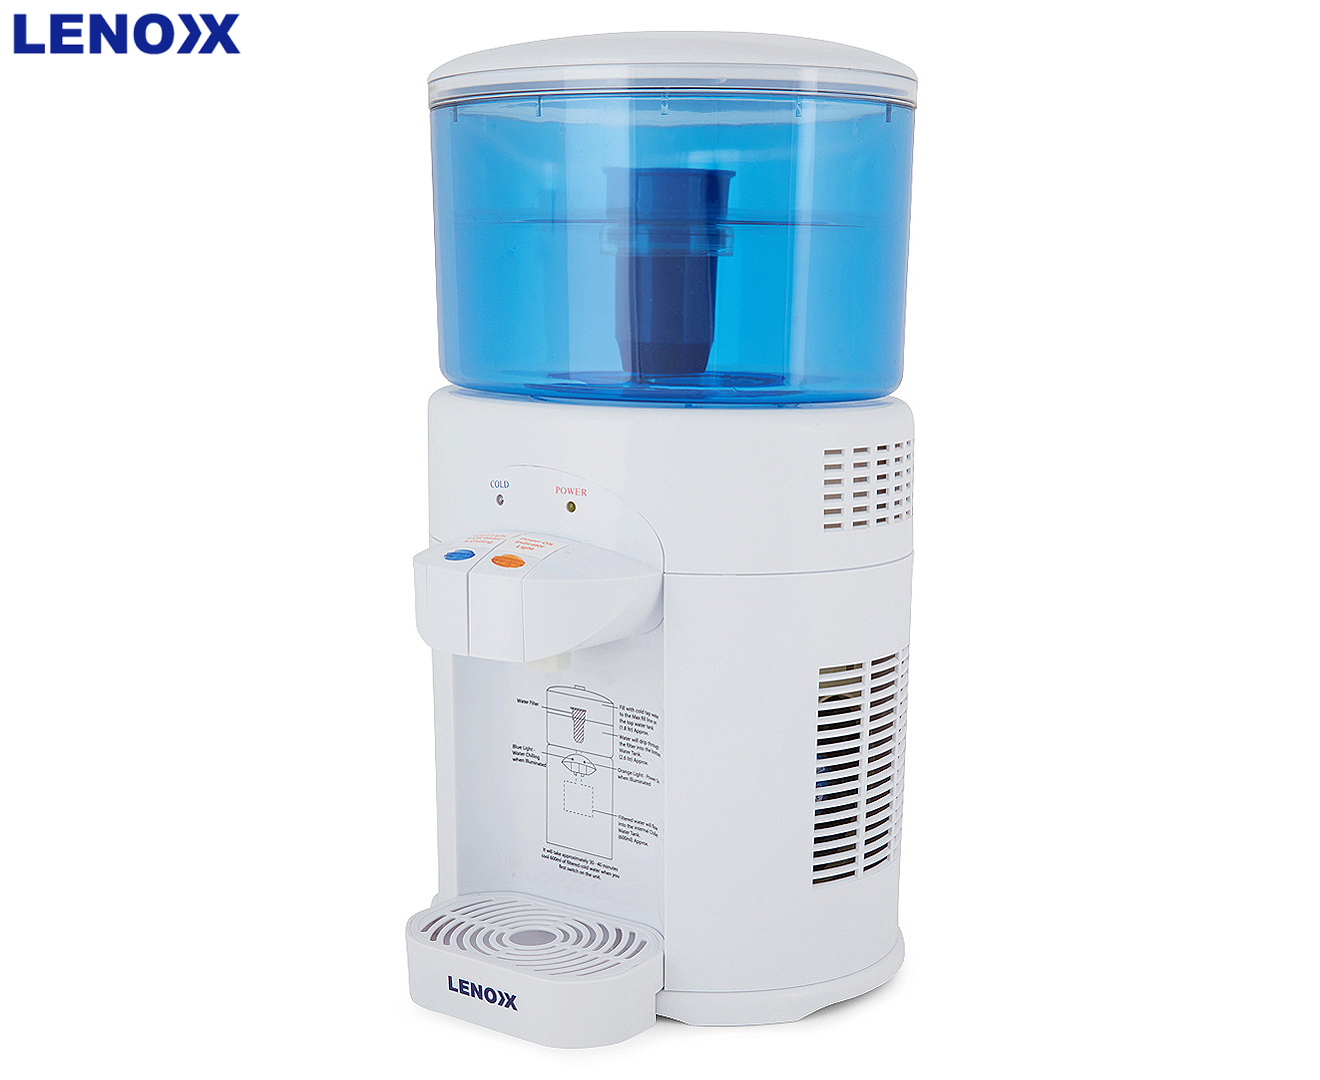 Eigen Weven Vervoer Lenoxx 5L Benchtop Water Filter & Chiller | Catch.com.au